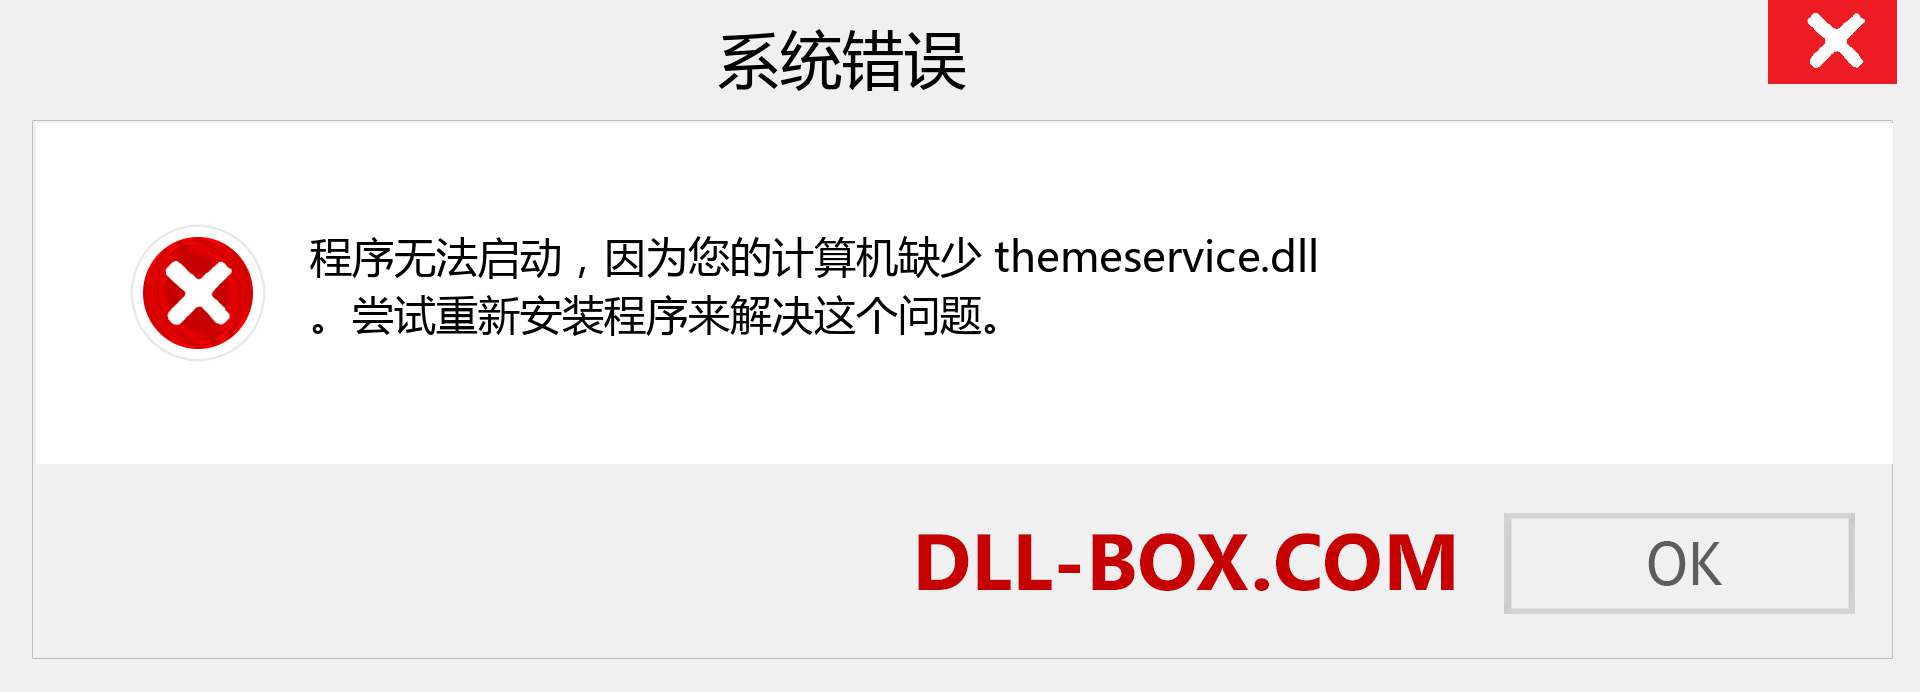 themeservice.dll 文件丢失？。 适用于 Windows 7、8、10 的下载 - 修复 Windows、照片、图像上的 themeservice dll 丢失错误